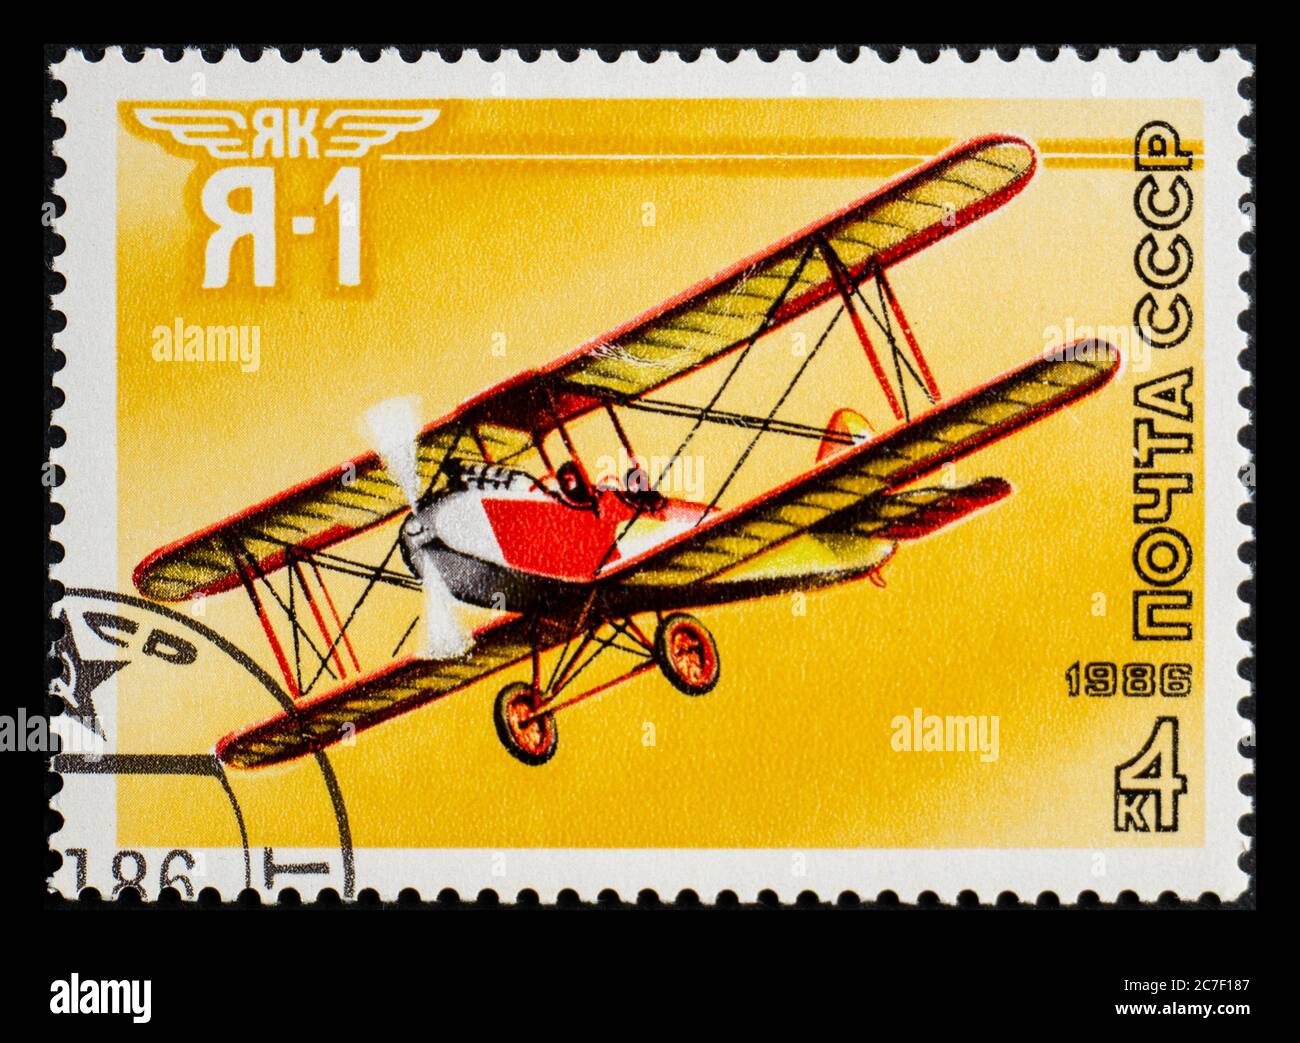 RUSSLAND, UdSSR - UM 1986: Eine Briefmarke aus der UdSSR mit dem Flugzeug Jakowlew Ya-1 Stockfoto